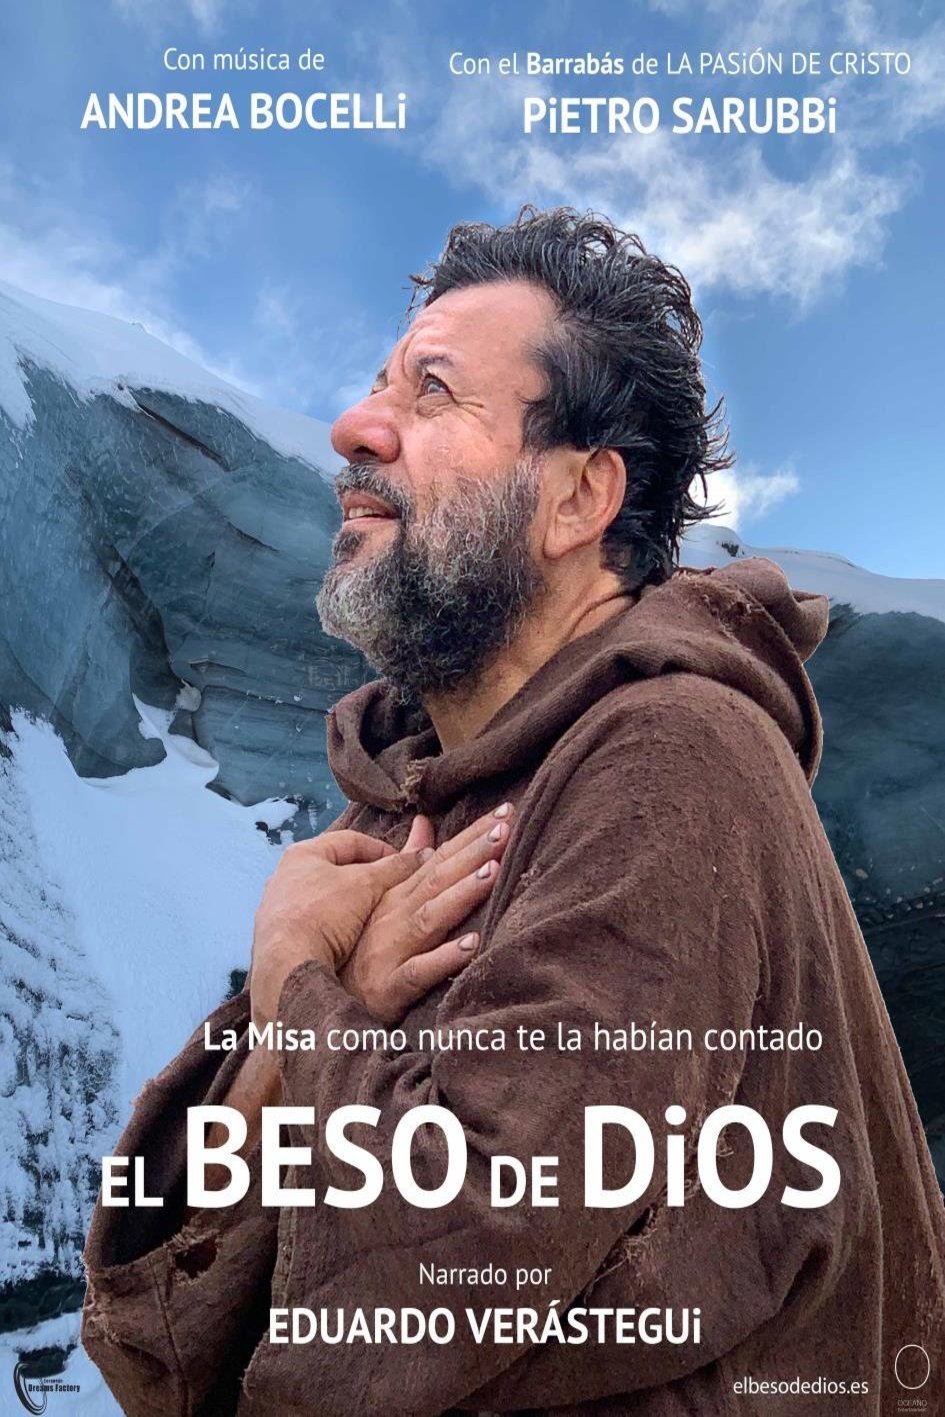 Spanish poster of the movie El beso de Dios